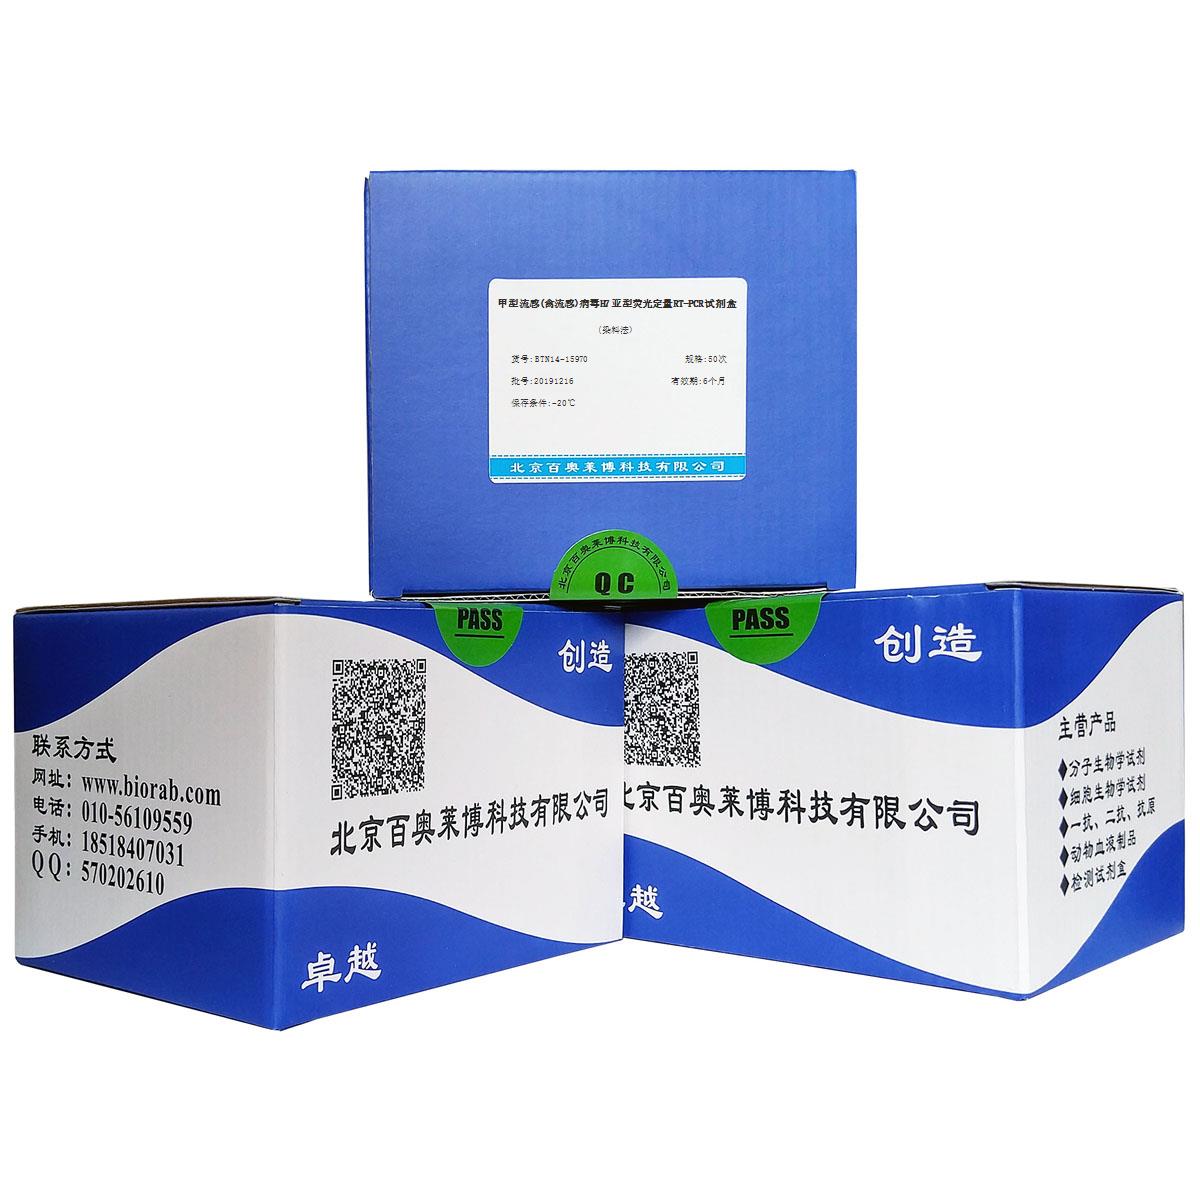 甲型流感(禽流感)病毒H7亚型荧光定量RT-PCR试剂盒(染料法)